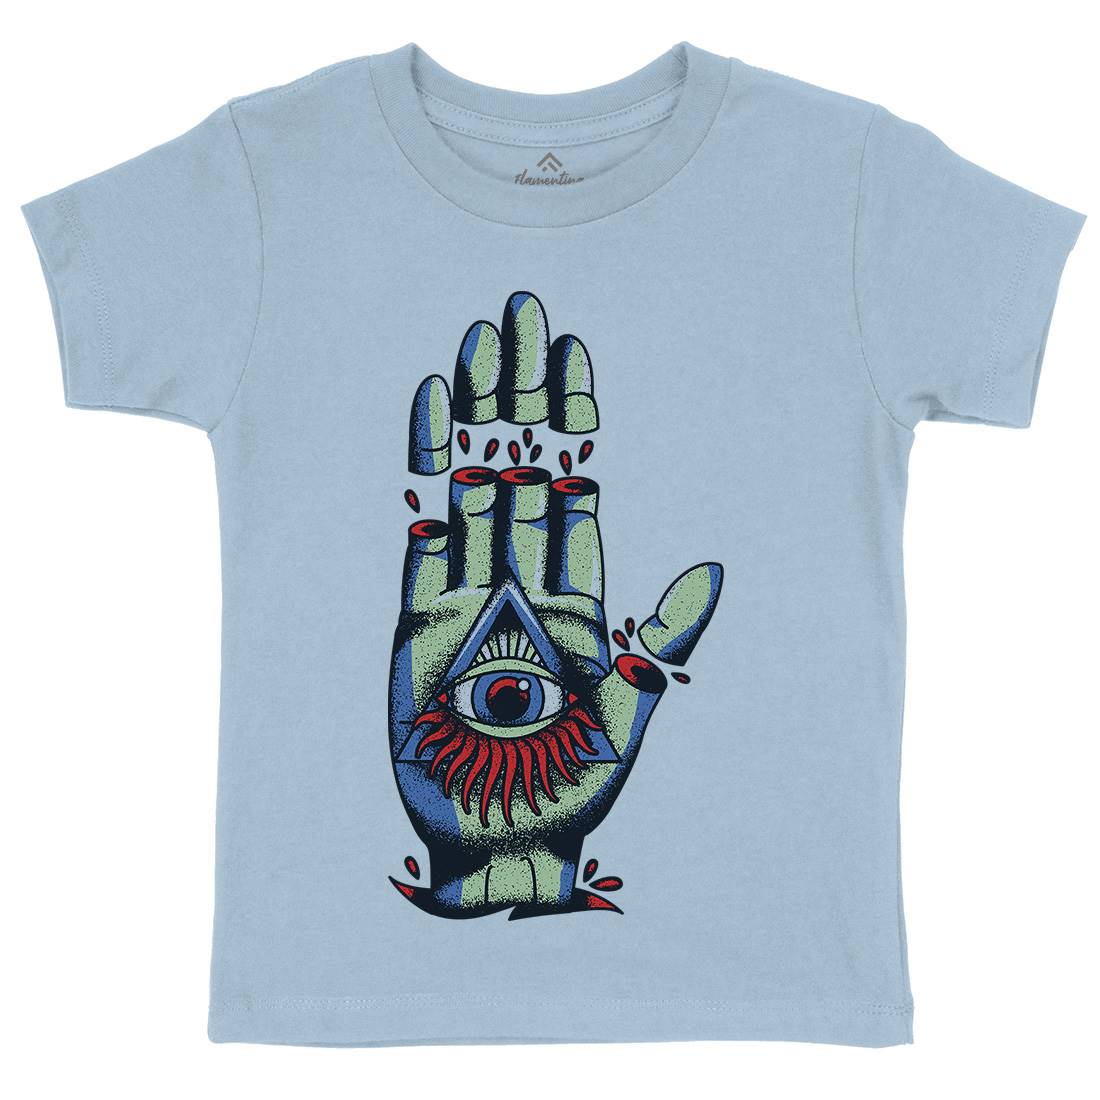 Hand Kids Crew Neck T-Shirt Tattoo A965